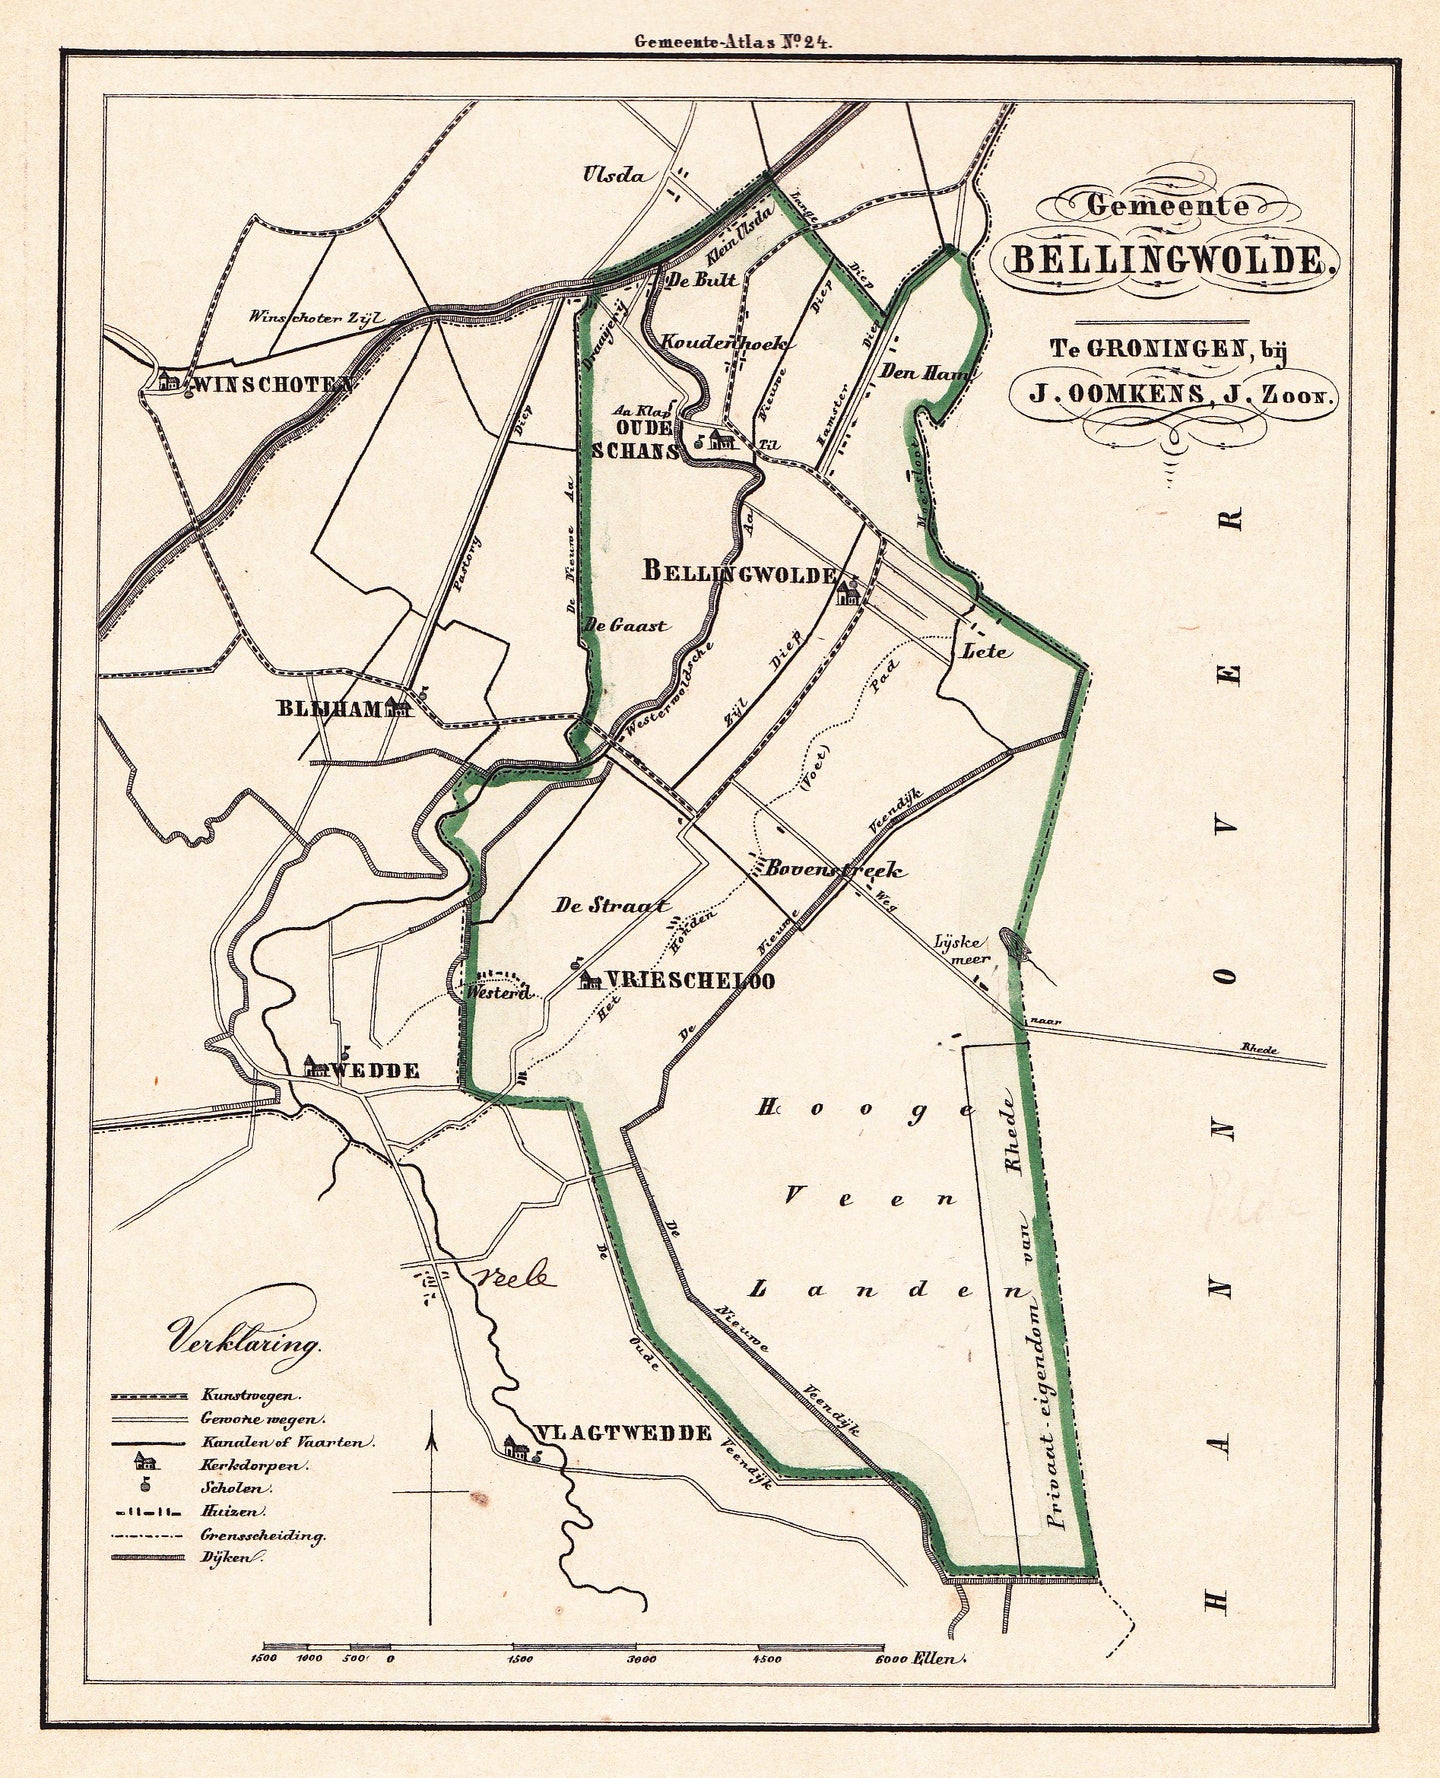 BELLINGWILDE - C Fehse/J Oomkens Jzn - 1862